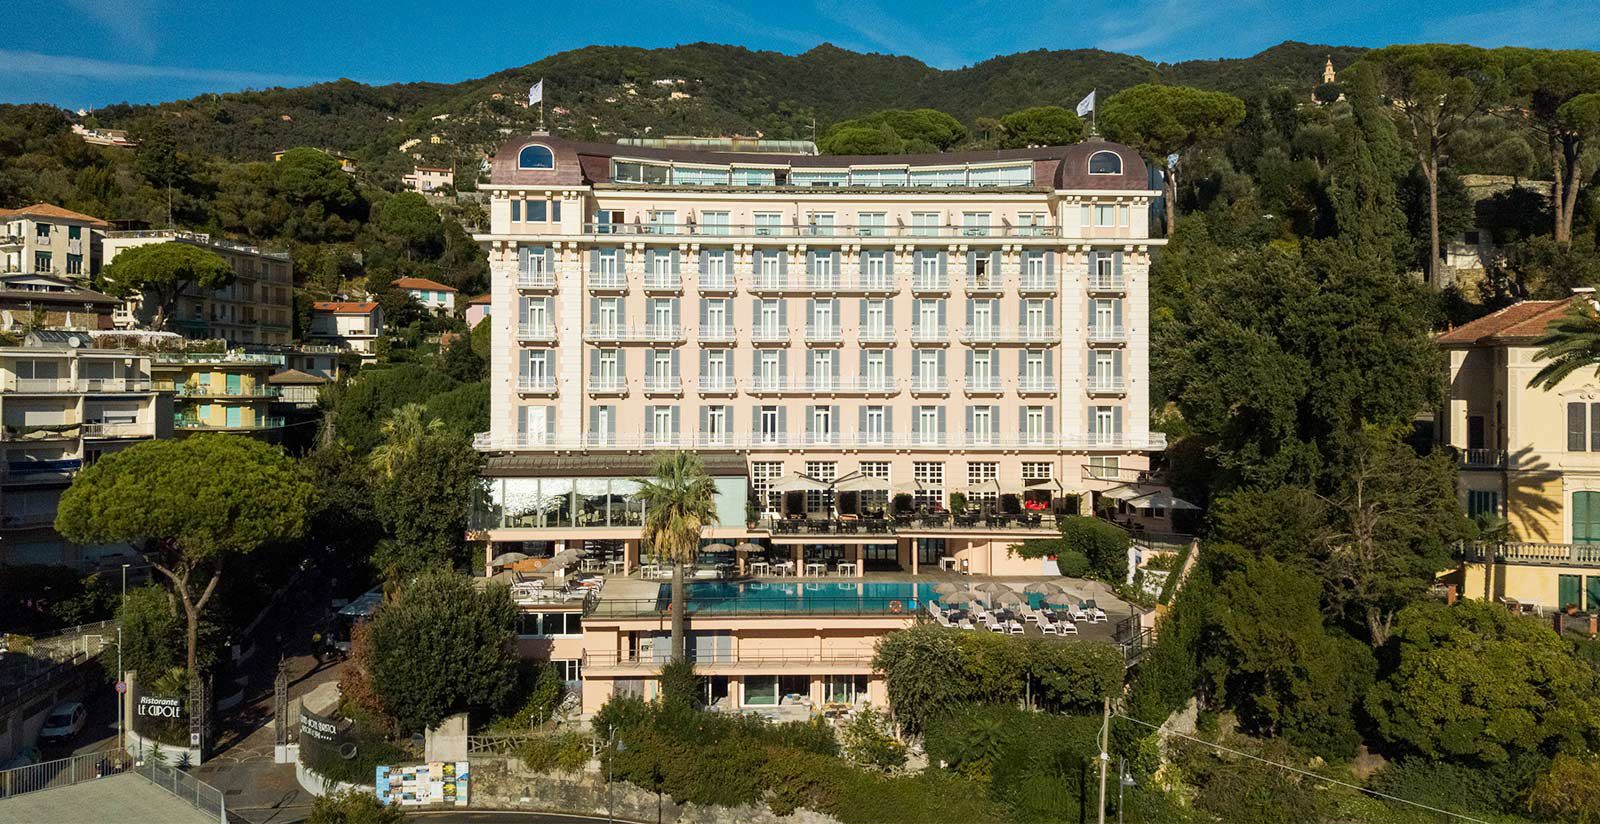 Grand Hotel Bristol - Resort 5 stelle per vacanze in Liguria 5